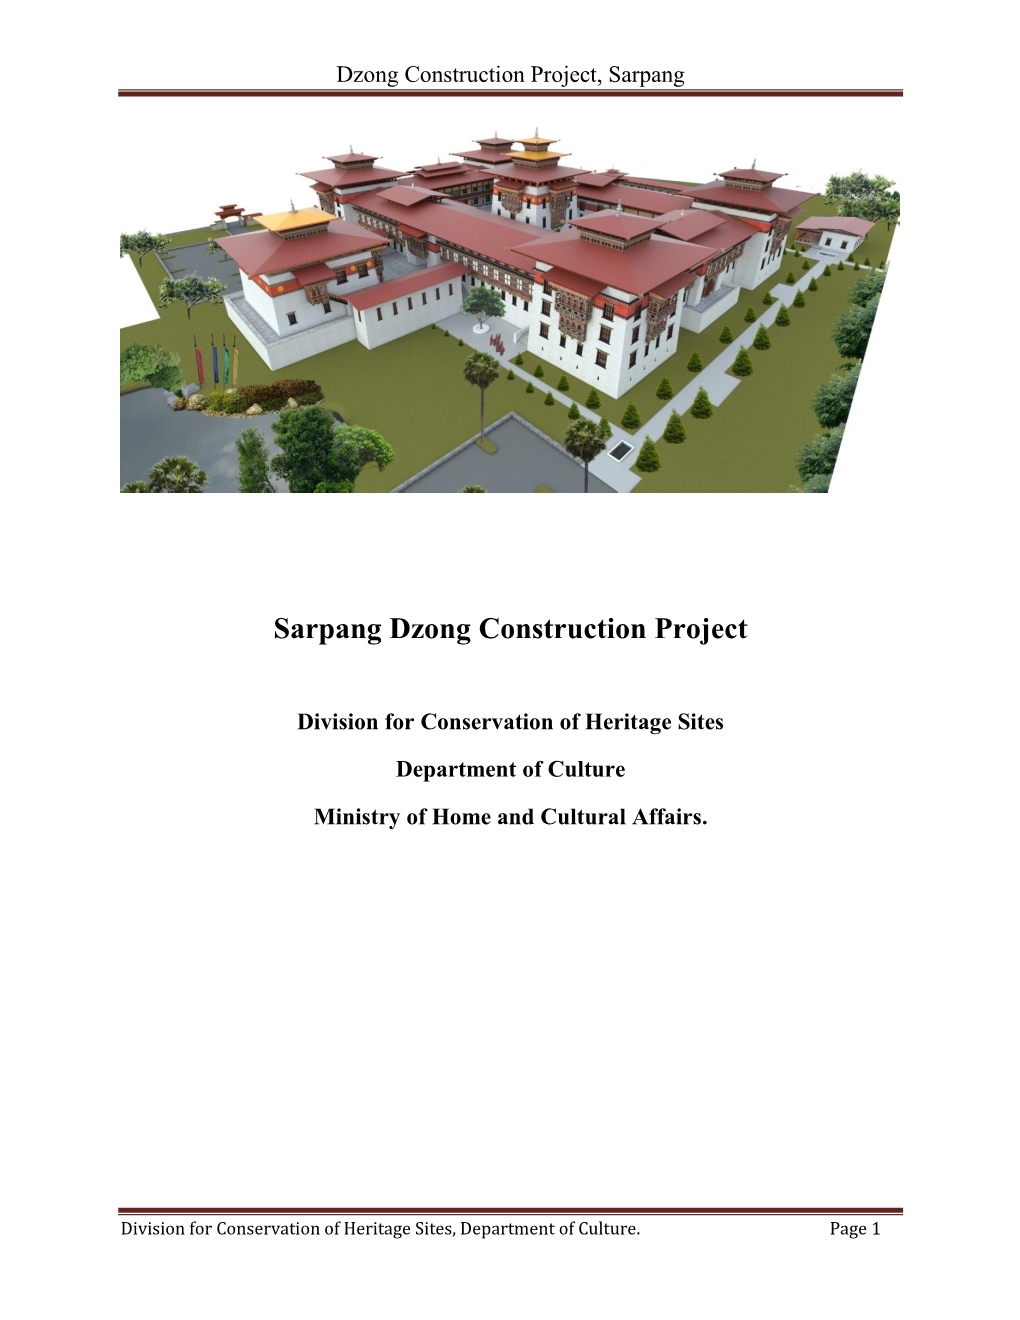 Sarpang Dzong Construction Project